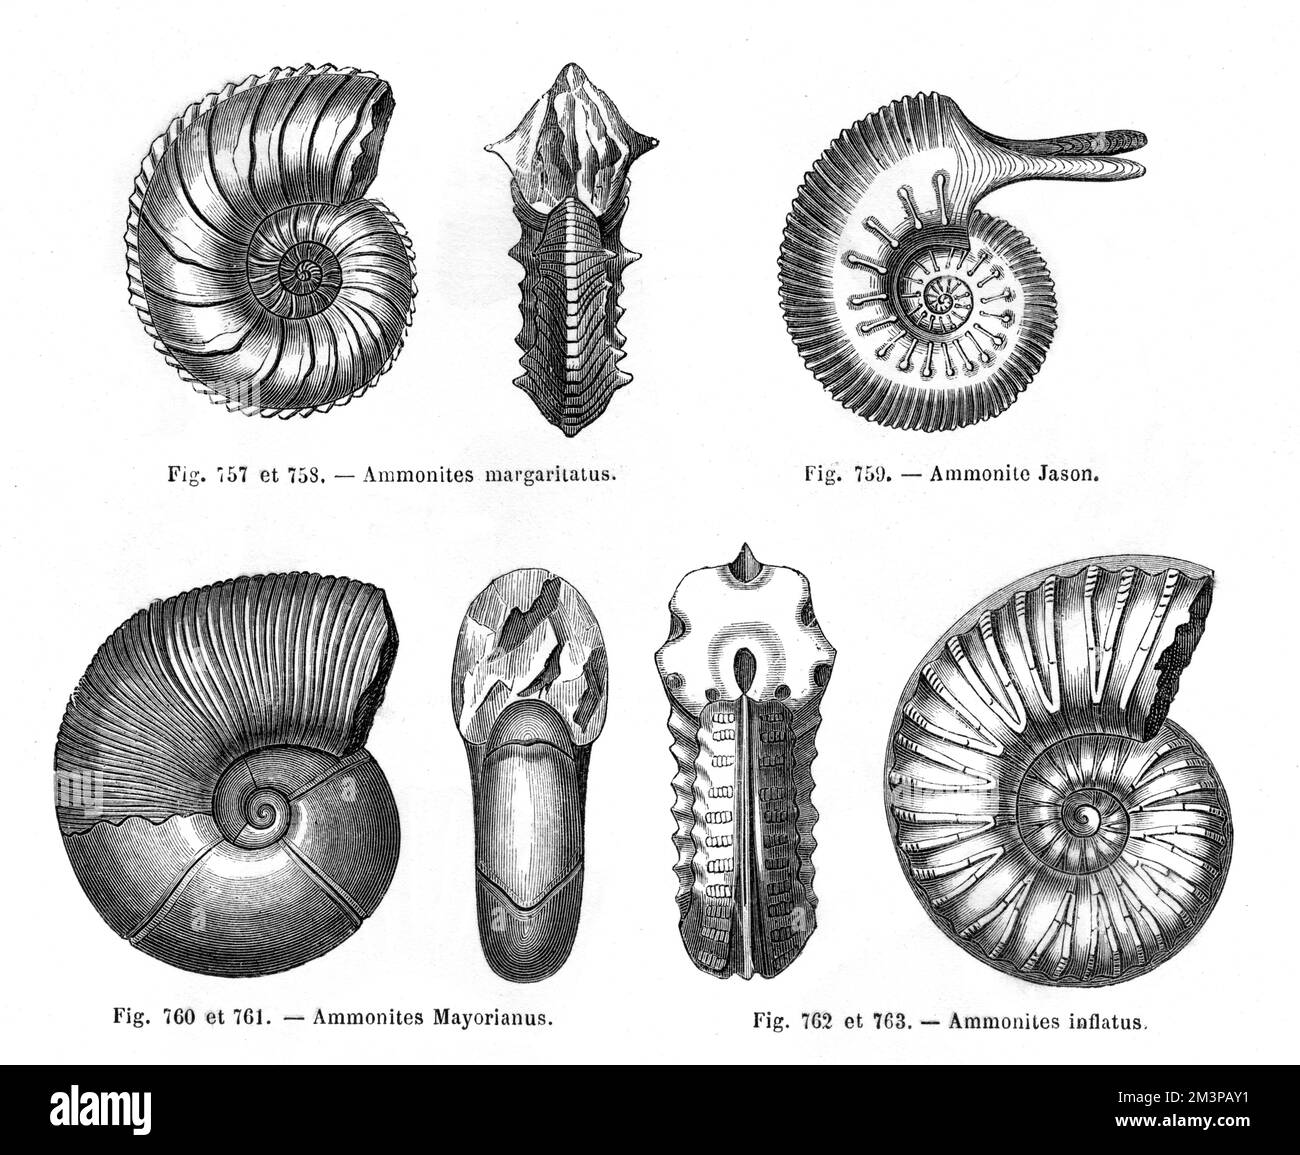 Quattro tipi di ammoniti: Ammoniti margaritani, Ammoniti Jason, Ammoniti mayorianus e Ammoniti inflatus. Foto Stock